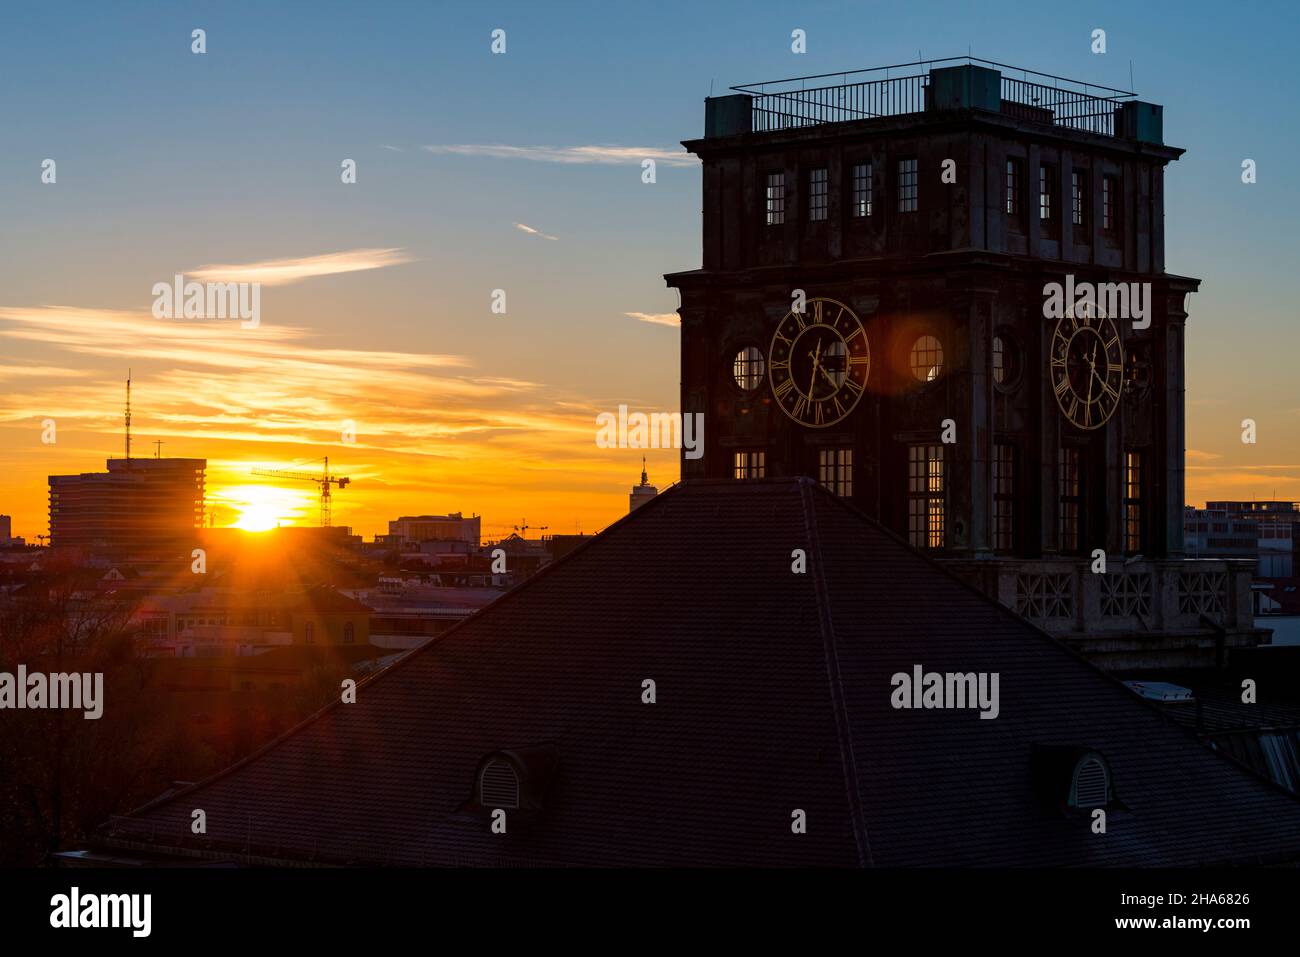 la torre thiersch de 1916,tum,universidad técnica de munich en la retroiluminación de la puesta de sol Foto de stock